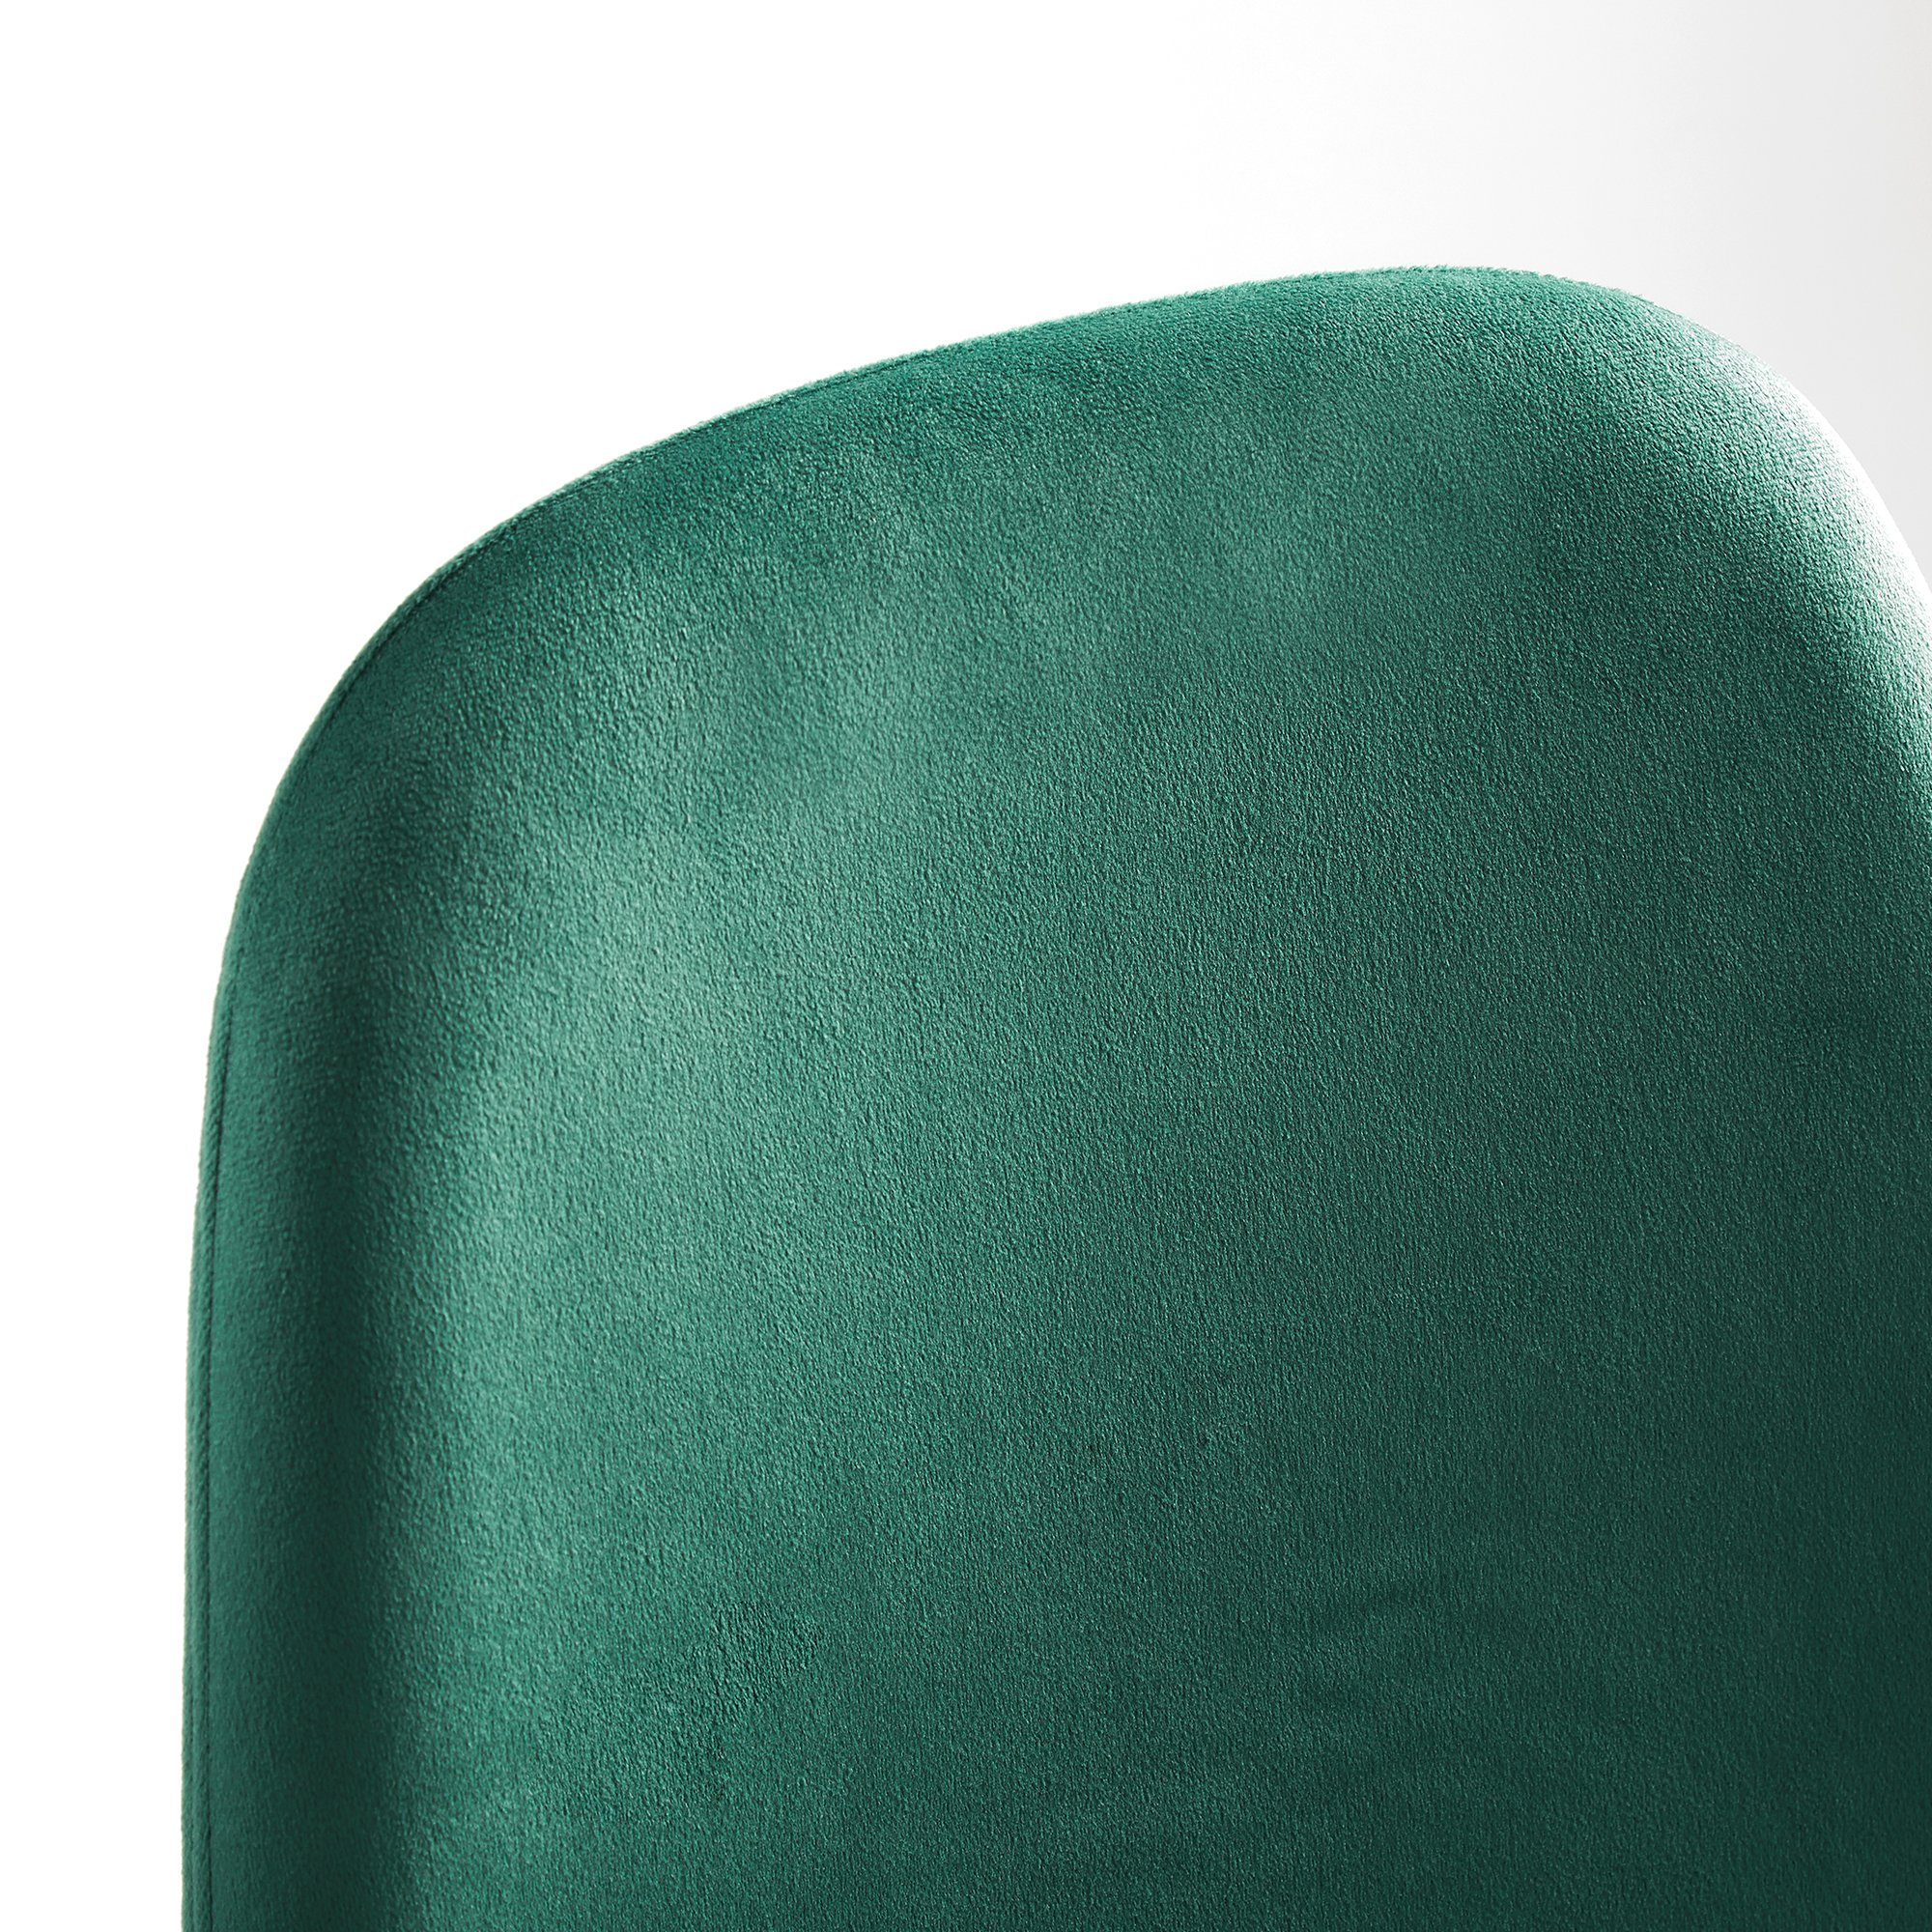 Grün 85 mit Esszimmerstühle Mondeer St), x und Metallfüßen Grün Polsterung, (2/4 43,5 cm, Hellgrau/Grün | Samt x Esszimmerstuhl 53